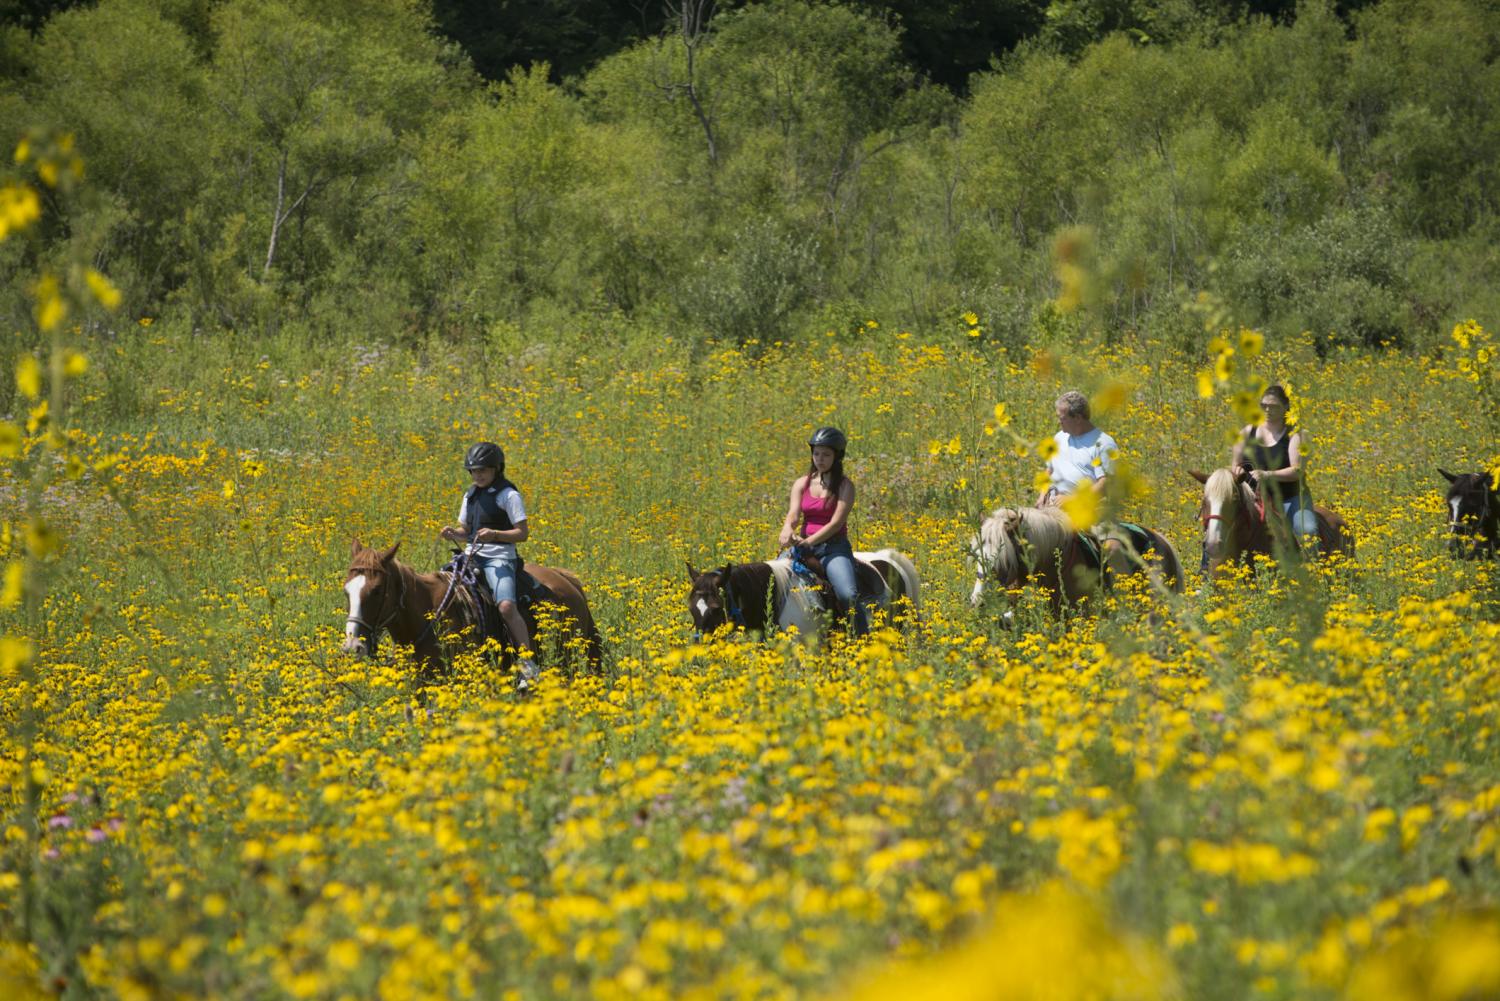 horseback riders and yellow flowers